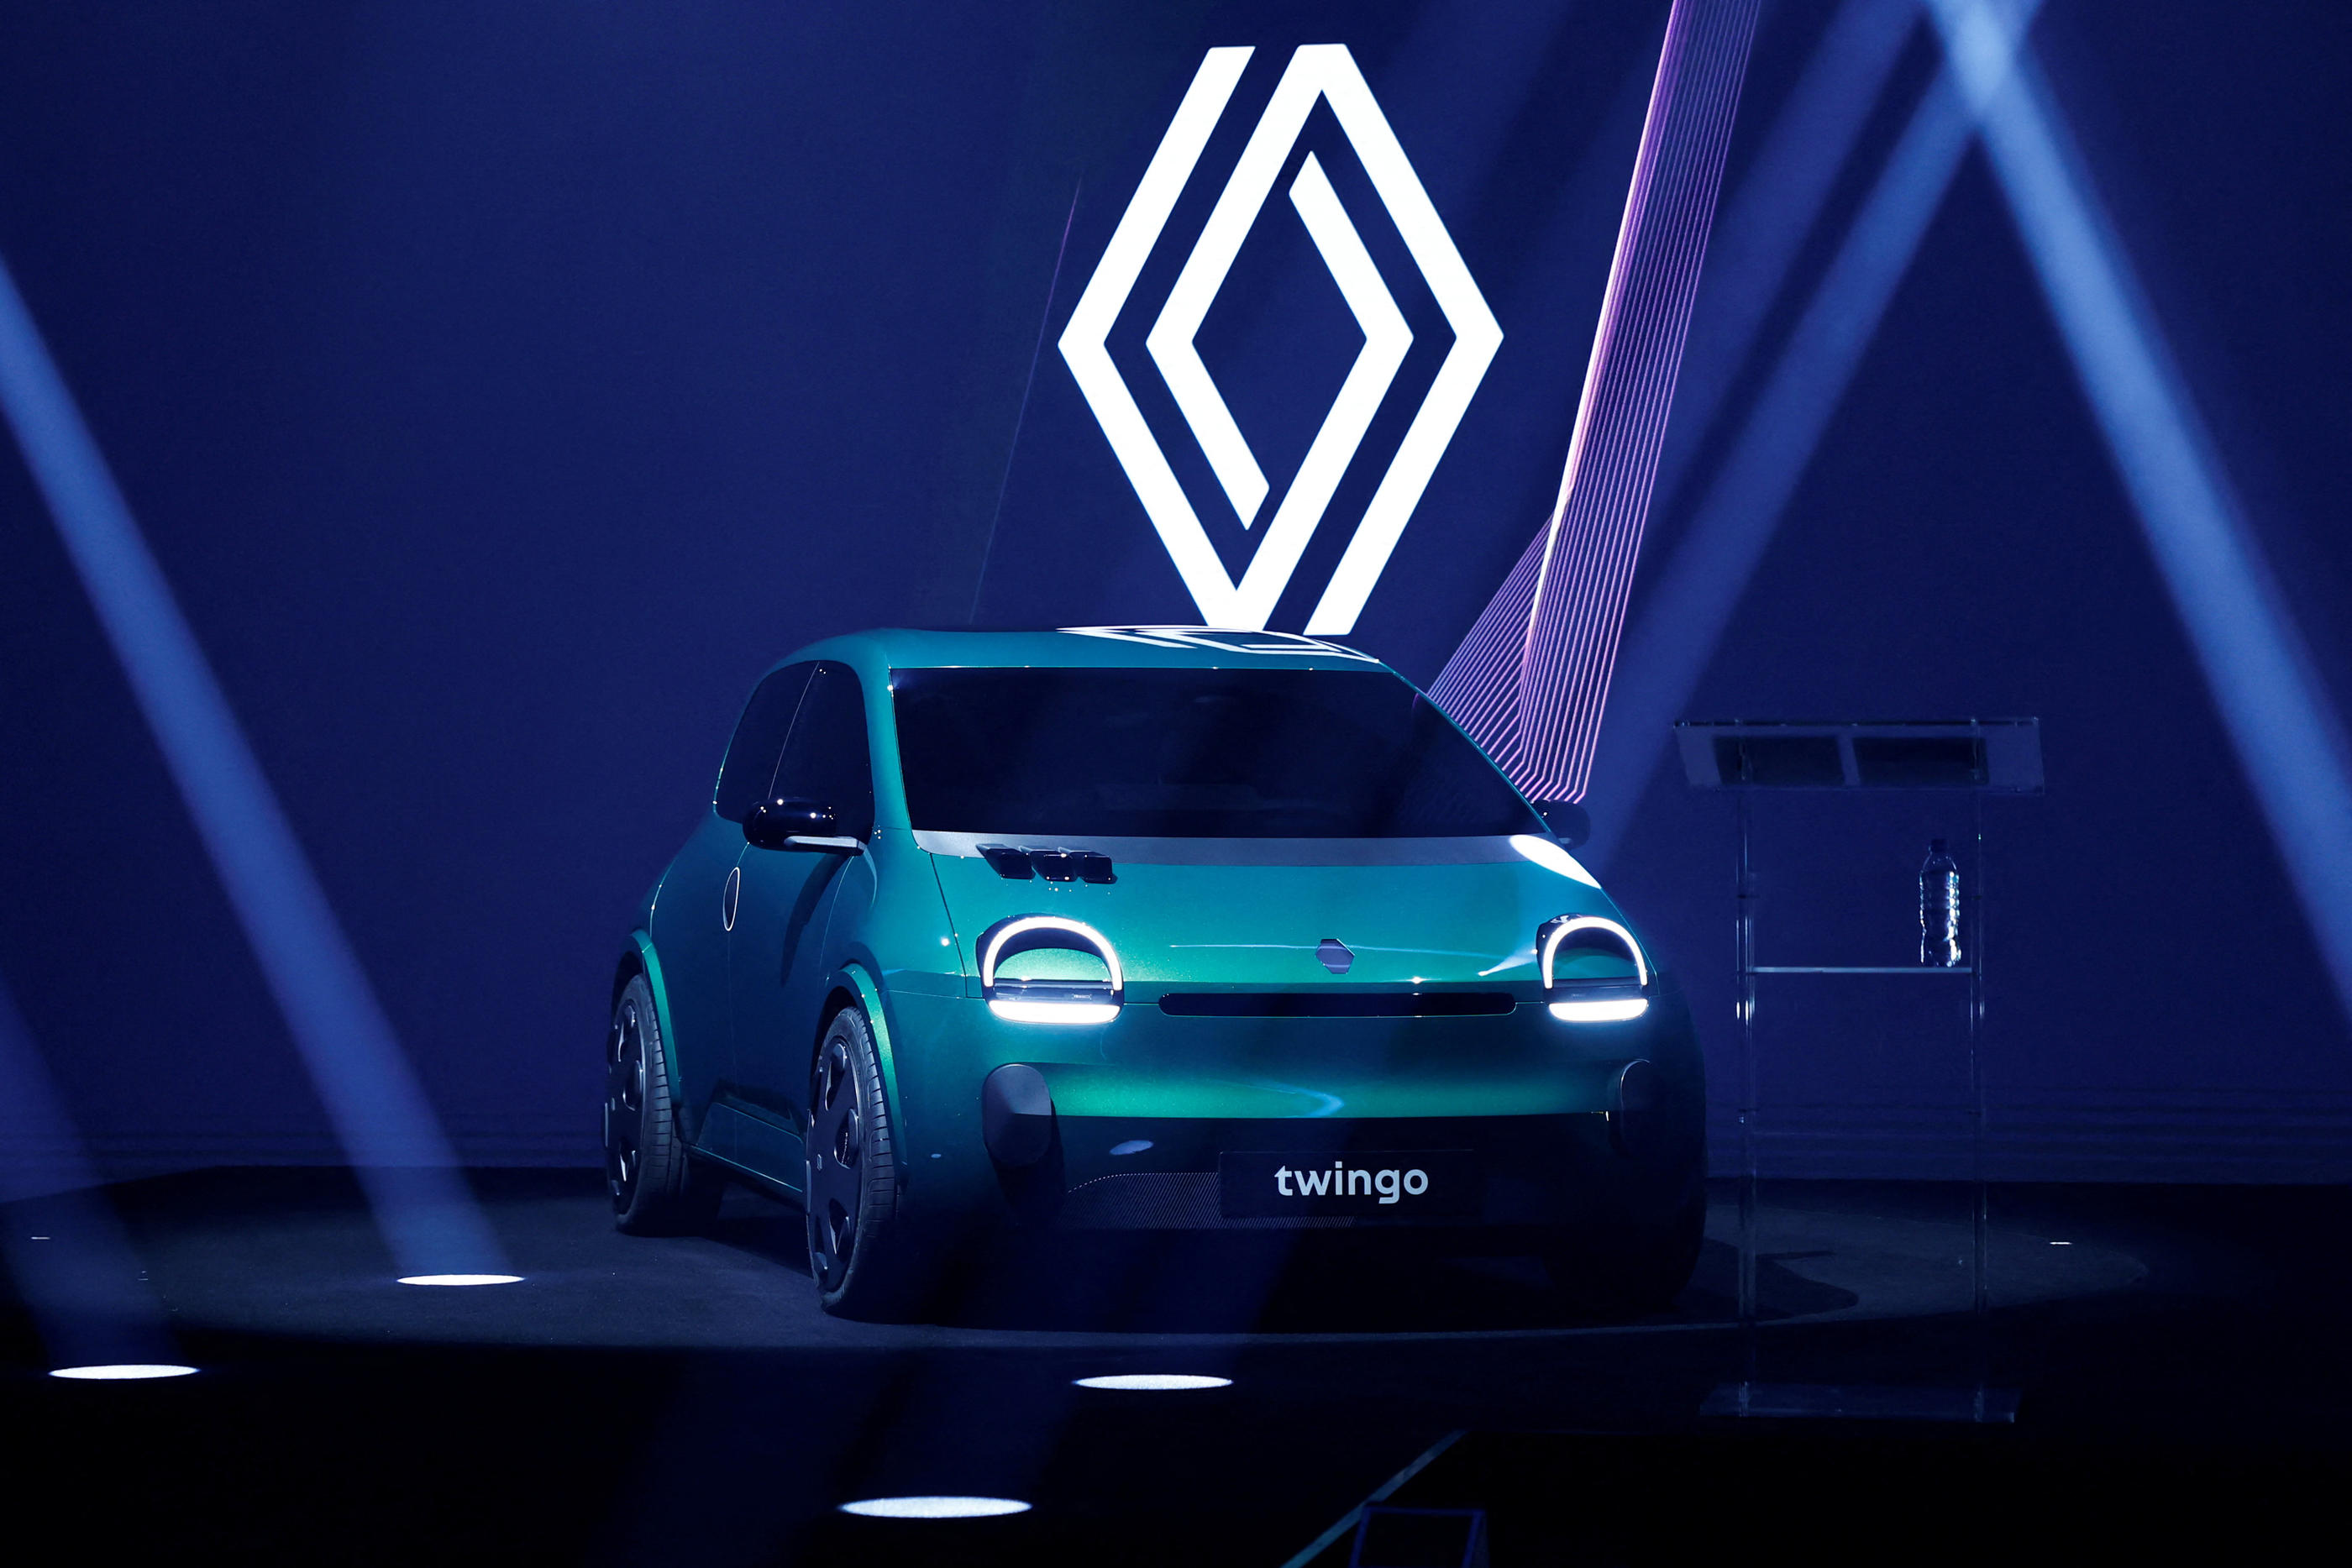 La nouvelle Twingo, une voiture électrique qui sera lancée à horizon 2025, sera disponible à moins de 20 000 euros. Reuters/Gonzalo Fuentes